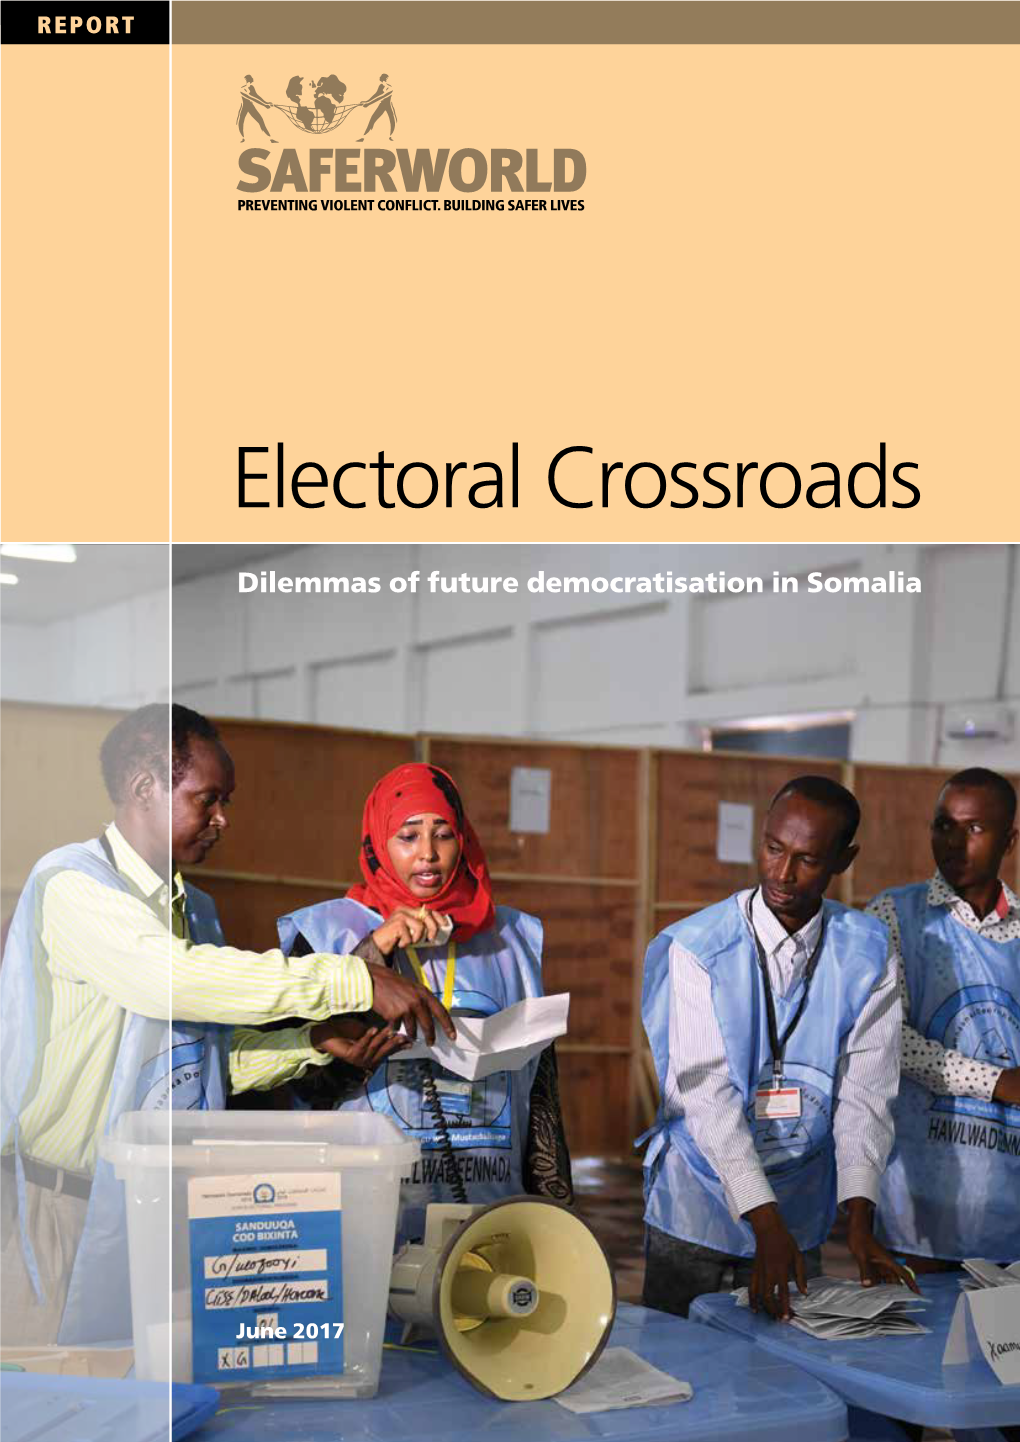 Electoral Crossroads in Somalia